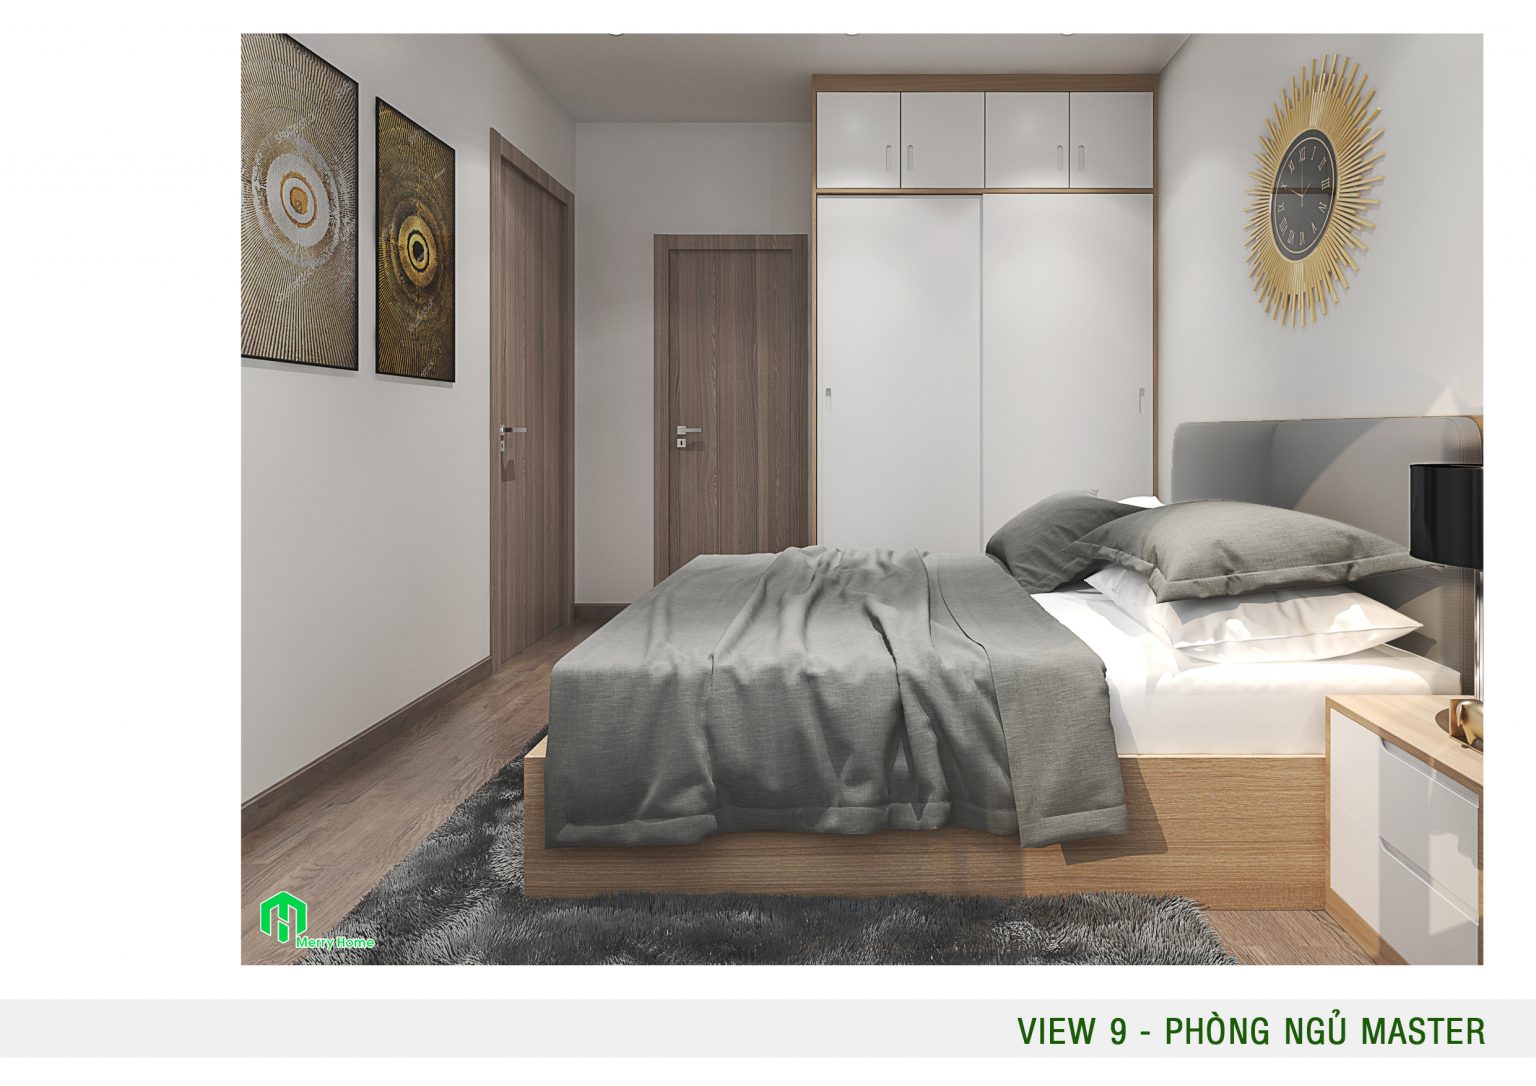 Thiết kế nội thất chung cư mini hiện đại, thông minh Mau-thiet-ke-noi-that-chung-cu-mini-30m2-3-1536x1086